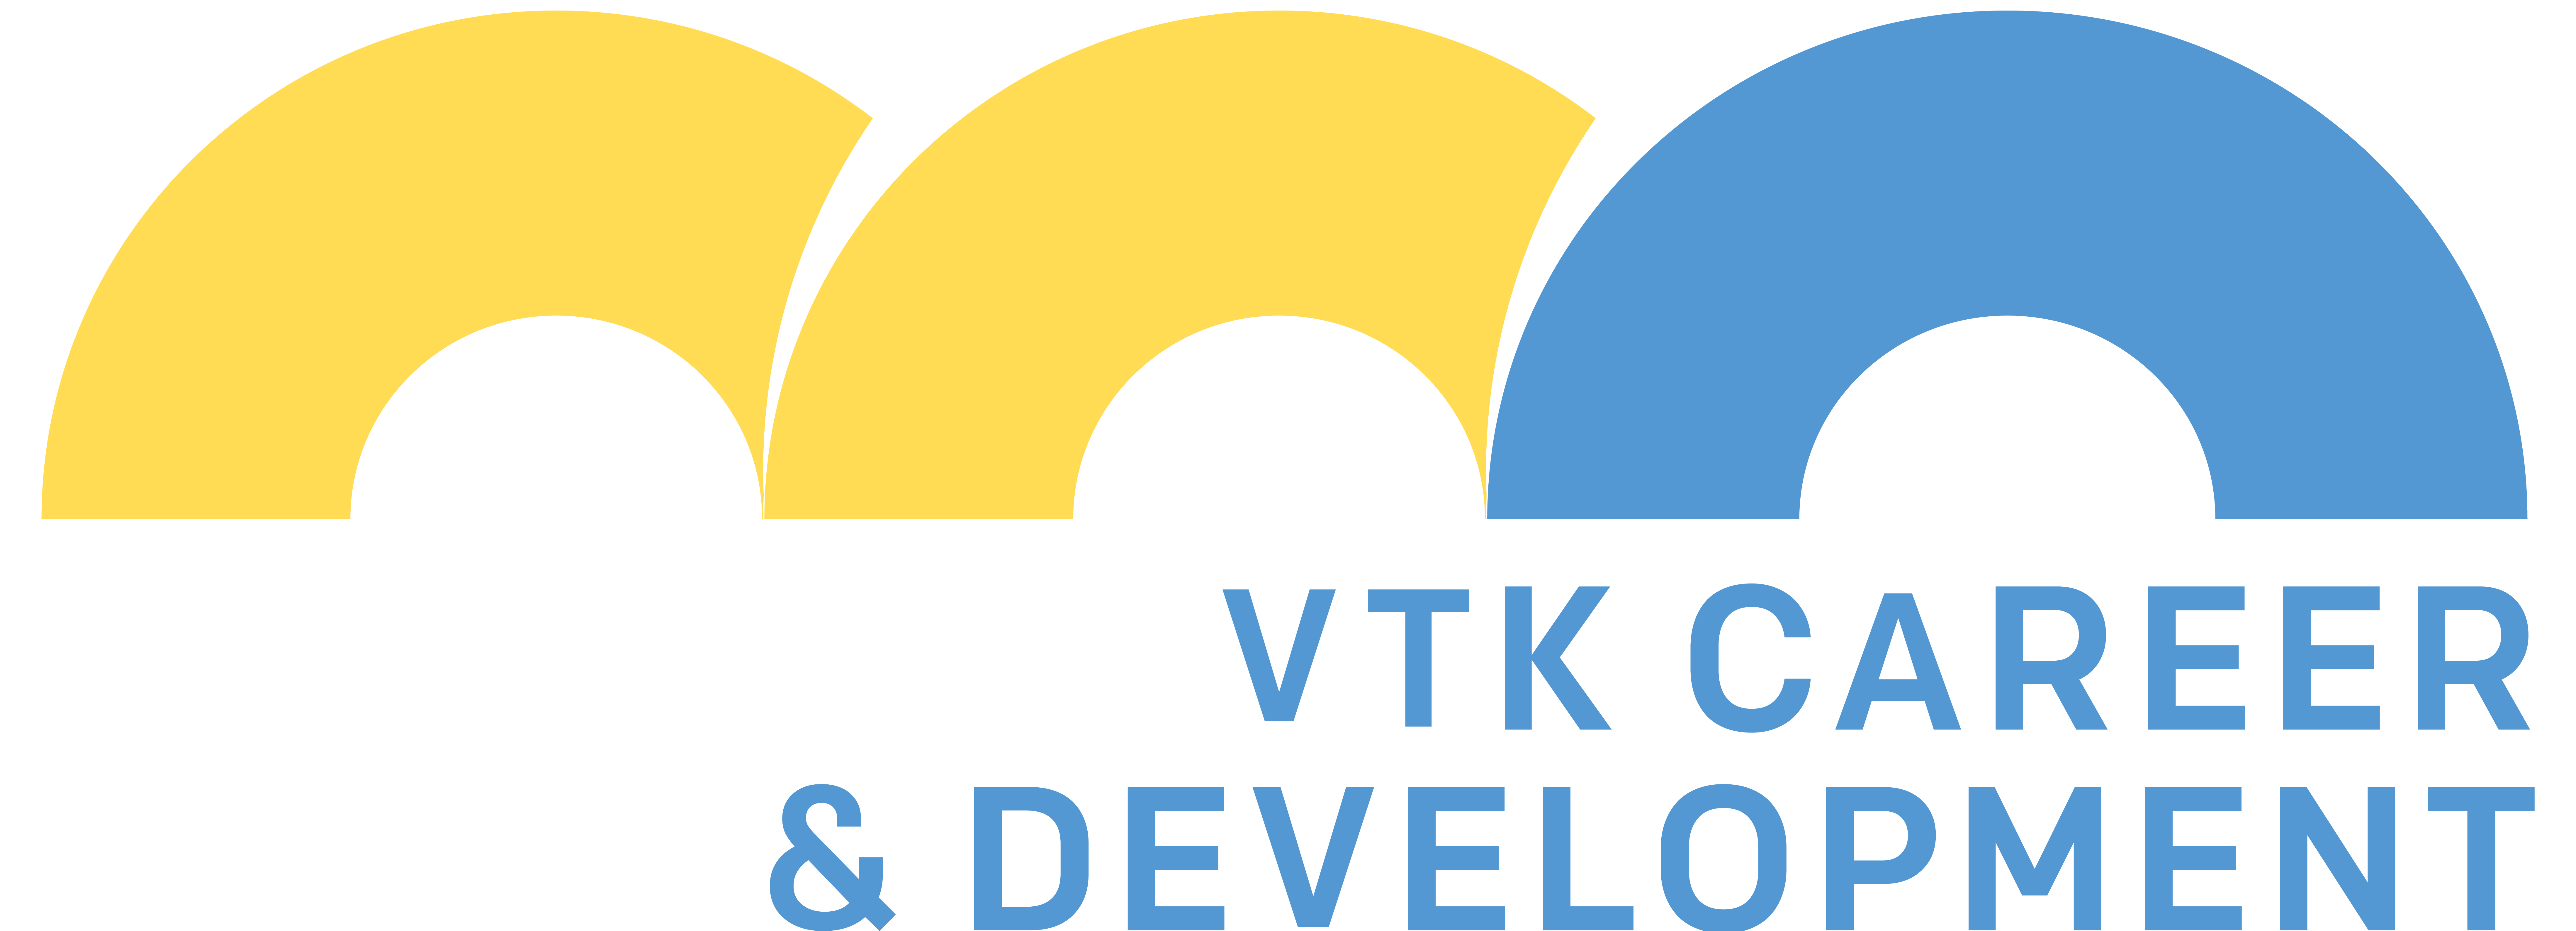 VTK Career & Development